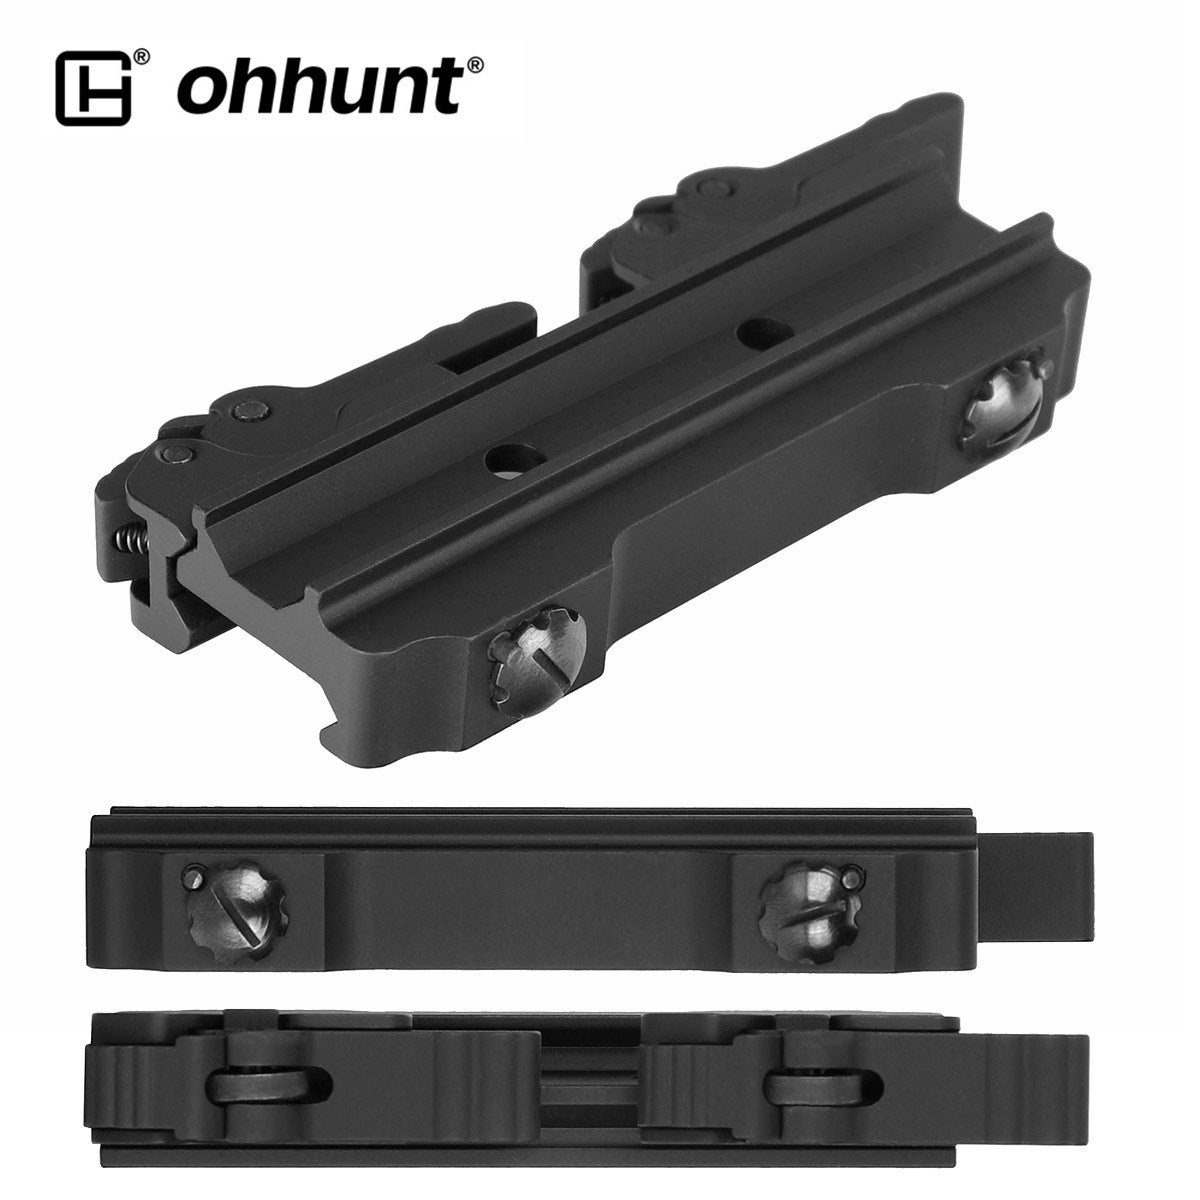 ohhunt Quick Detach Mount for Fiber Optic Scope